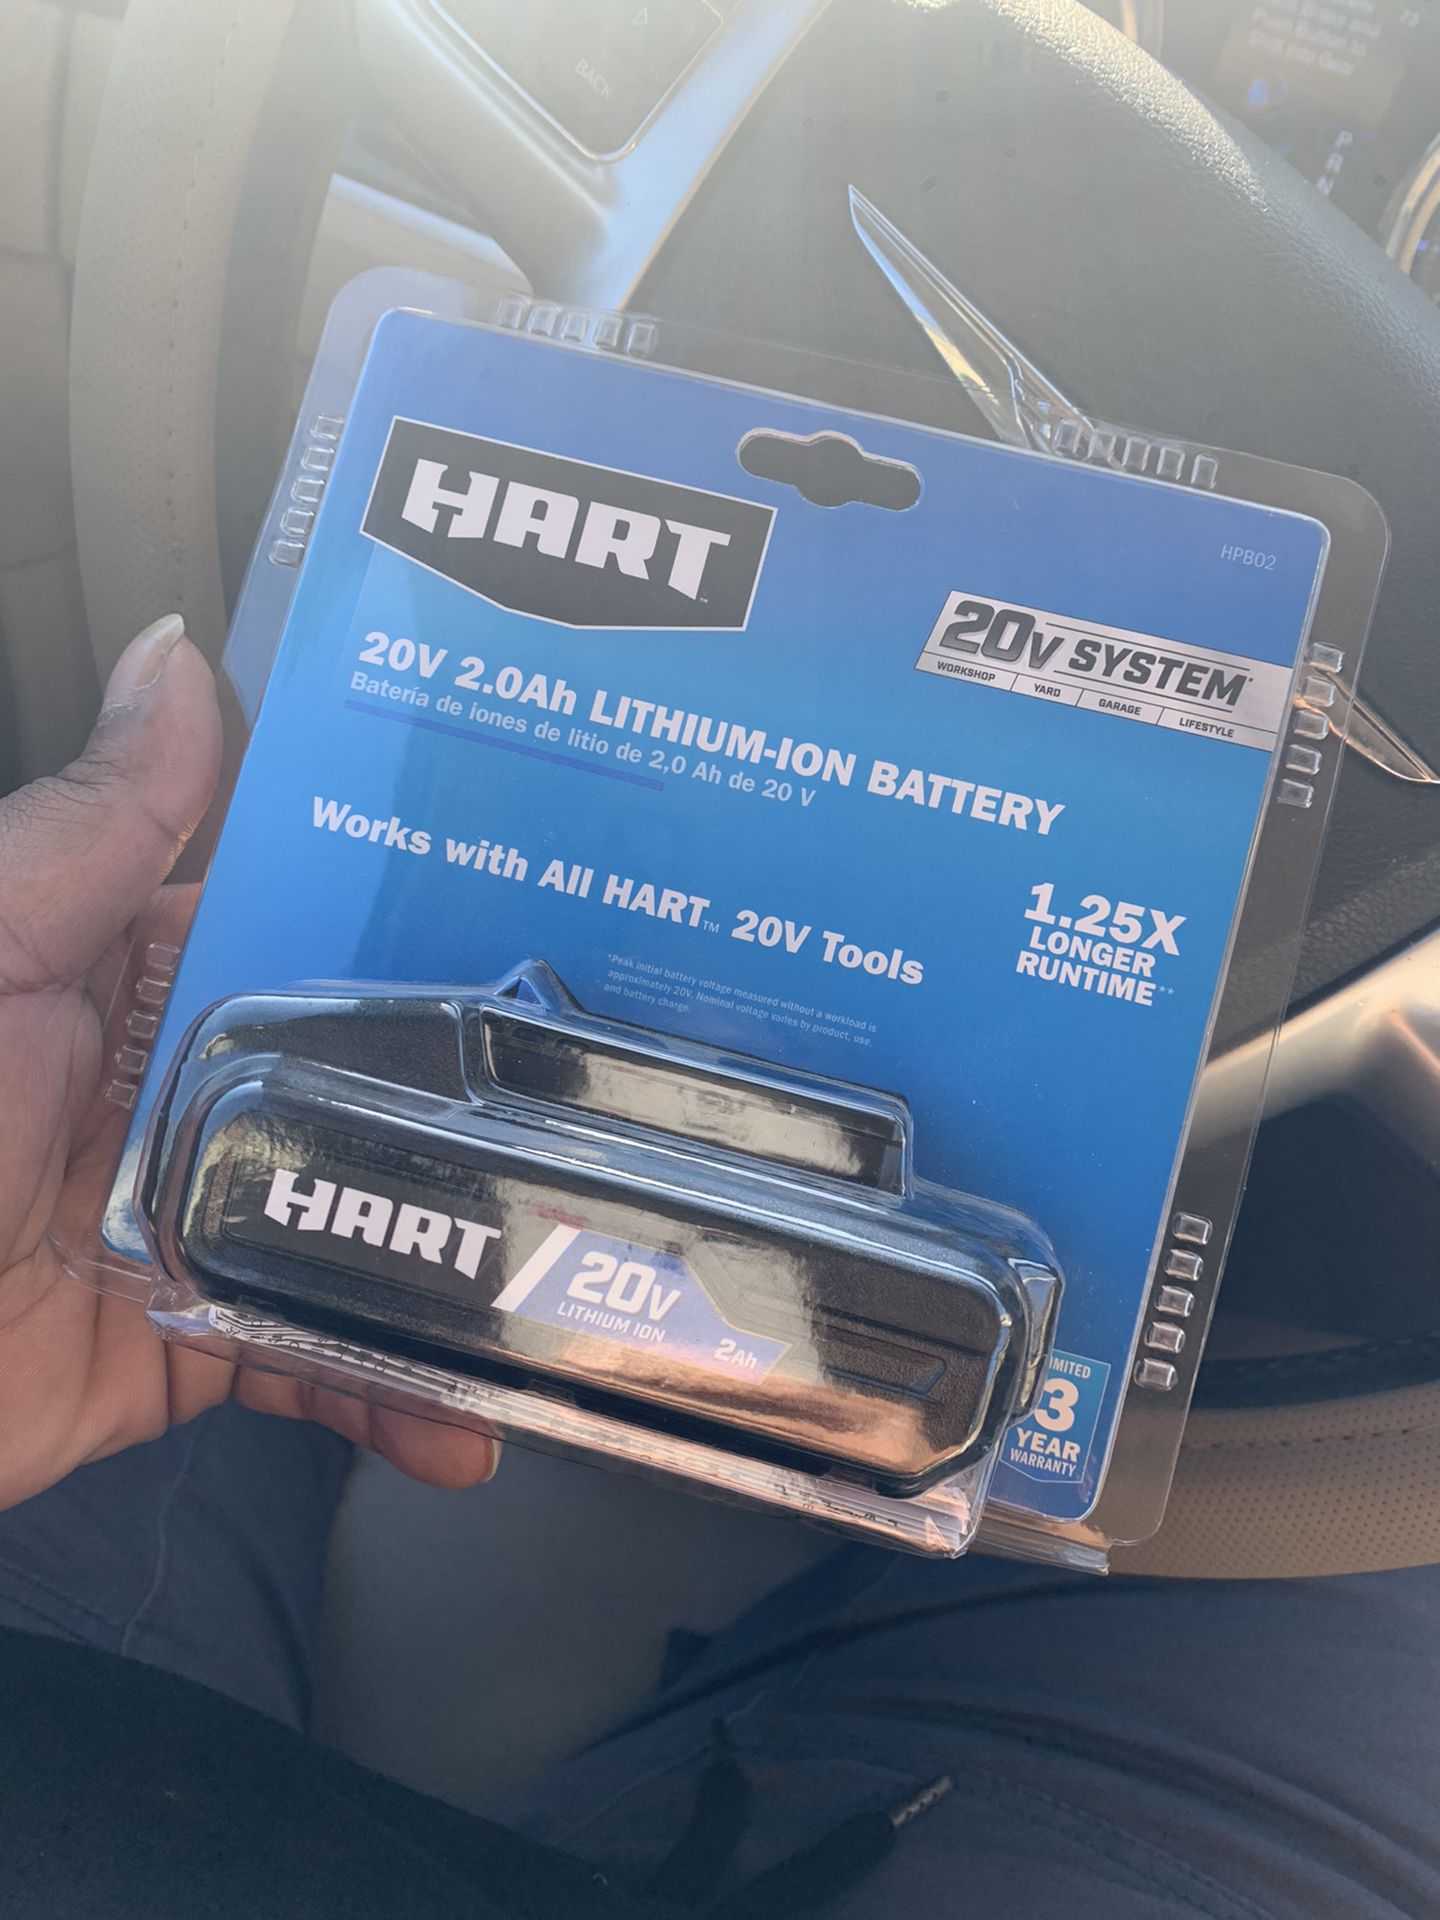 Hart battery